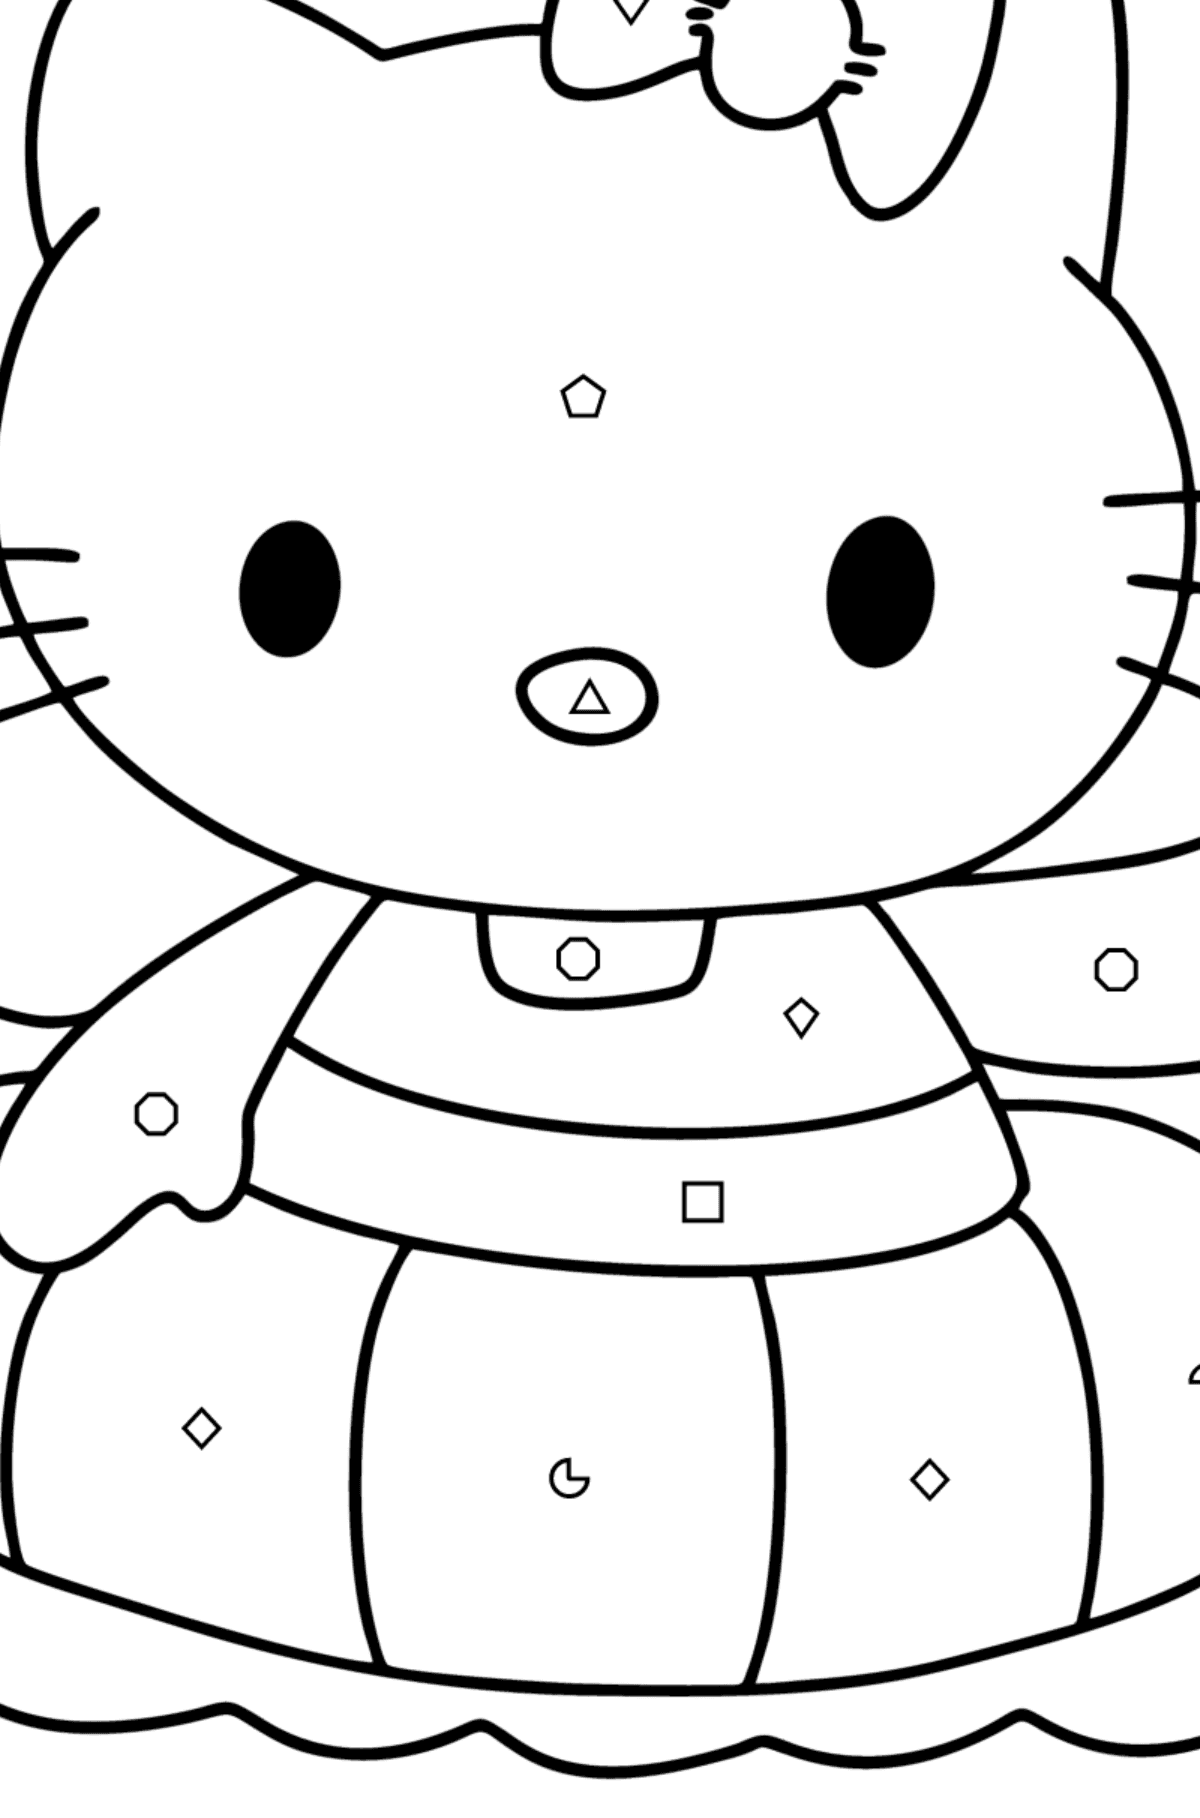 Boyama sayfası Hello Kitty yüzer - Geometrik Şekillerle Boyama çocuklar için